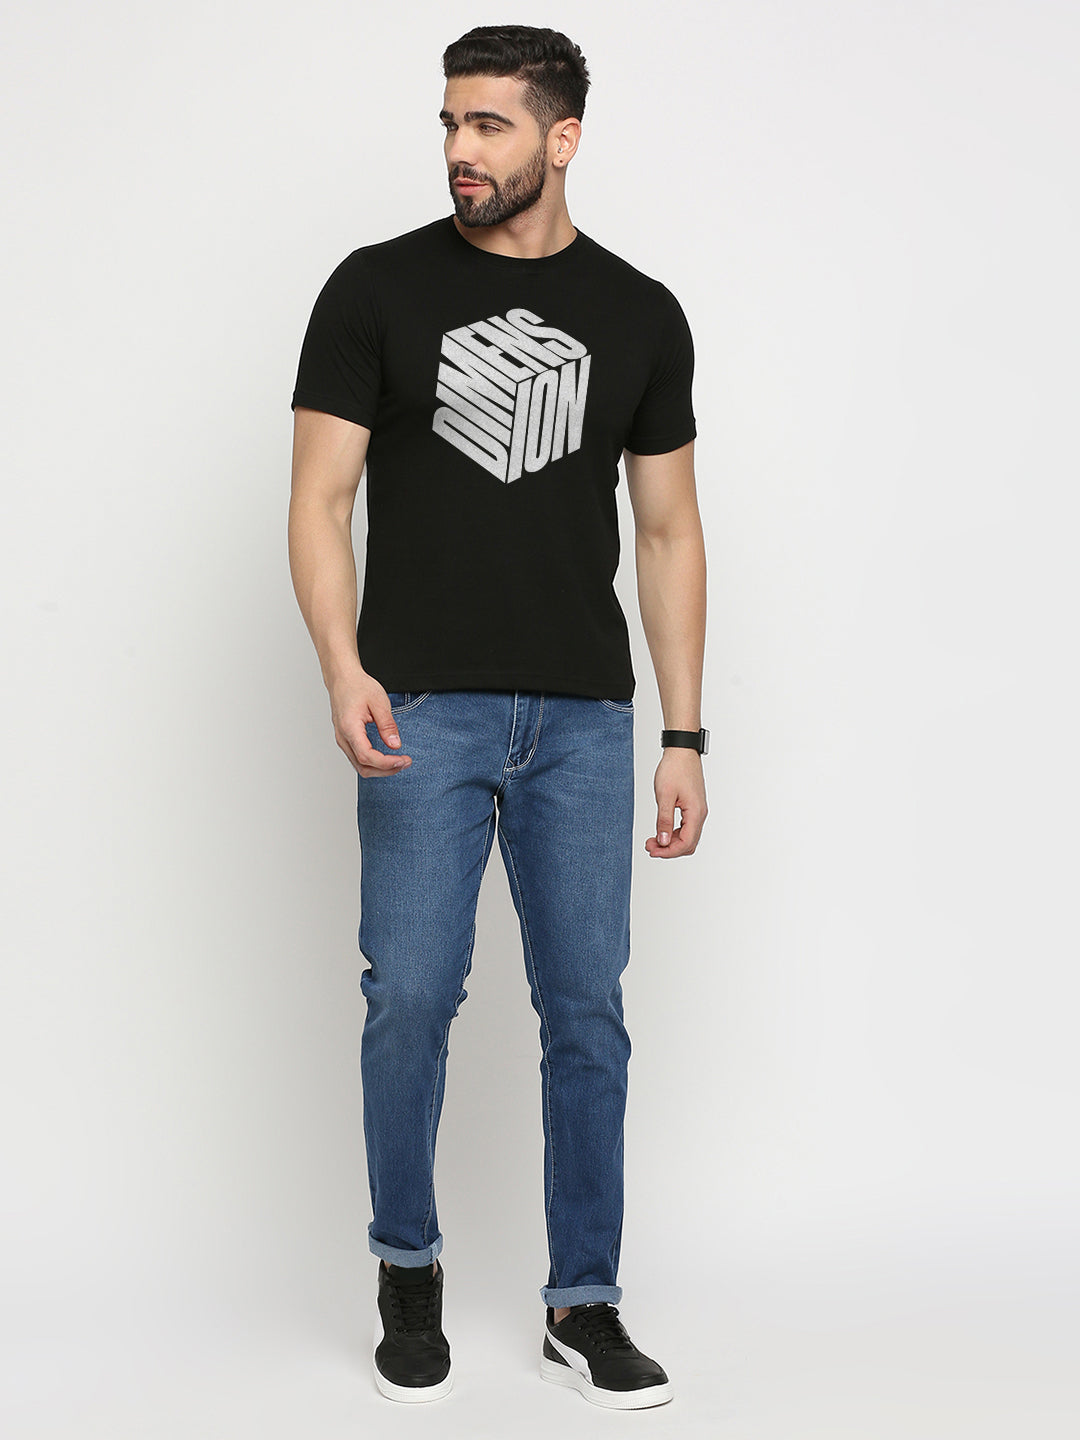 Dimension Cube T-Shirt